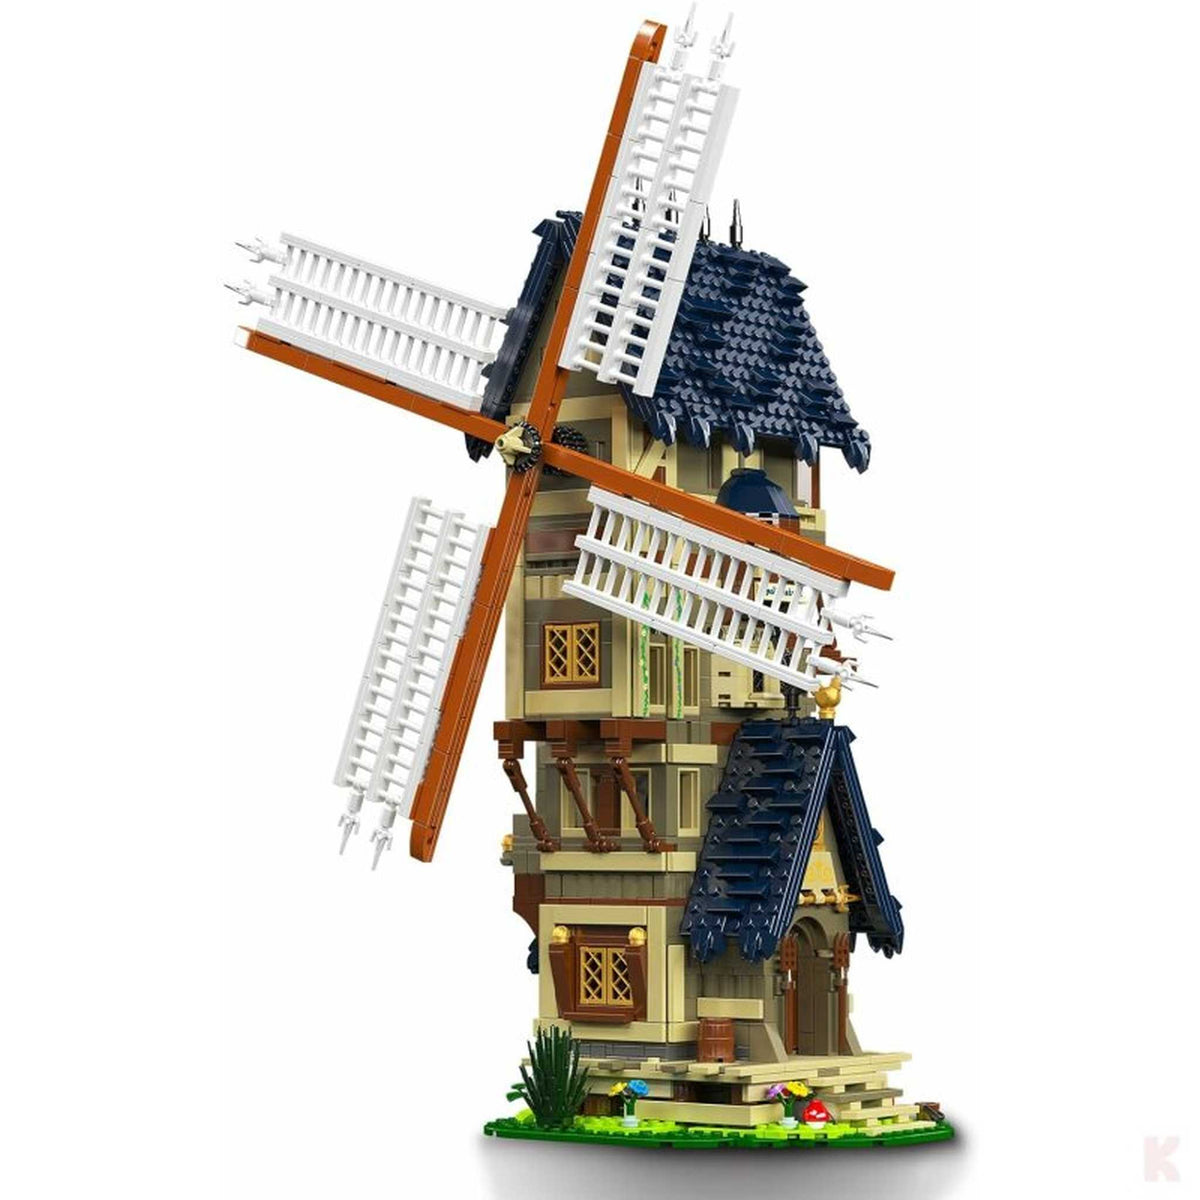 10060 - Mittelalterliche Windmühle (Mould King)